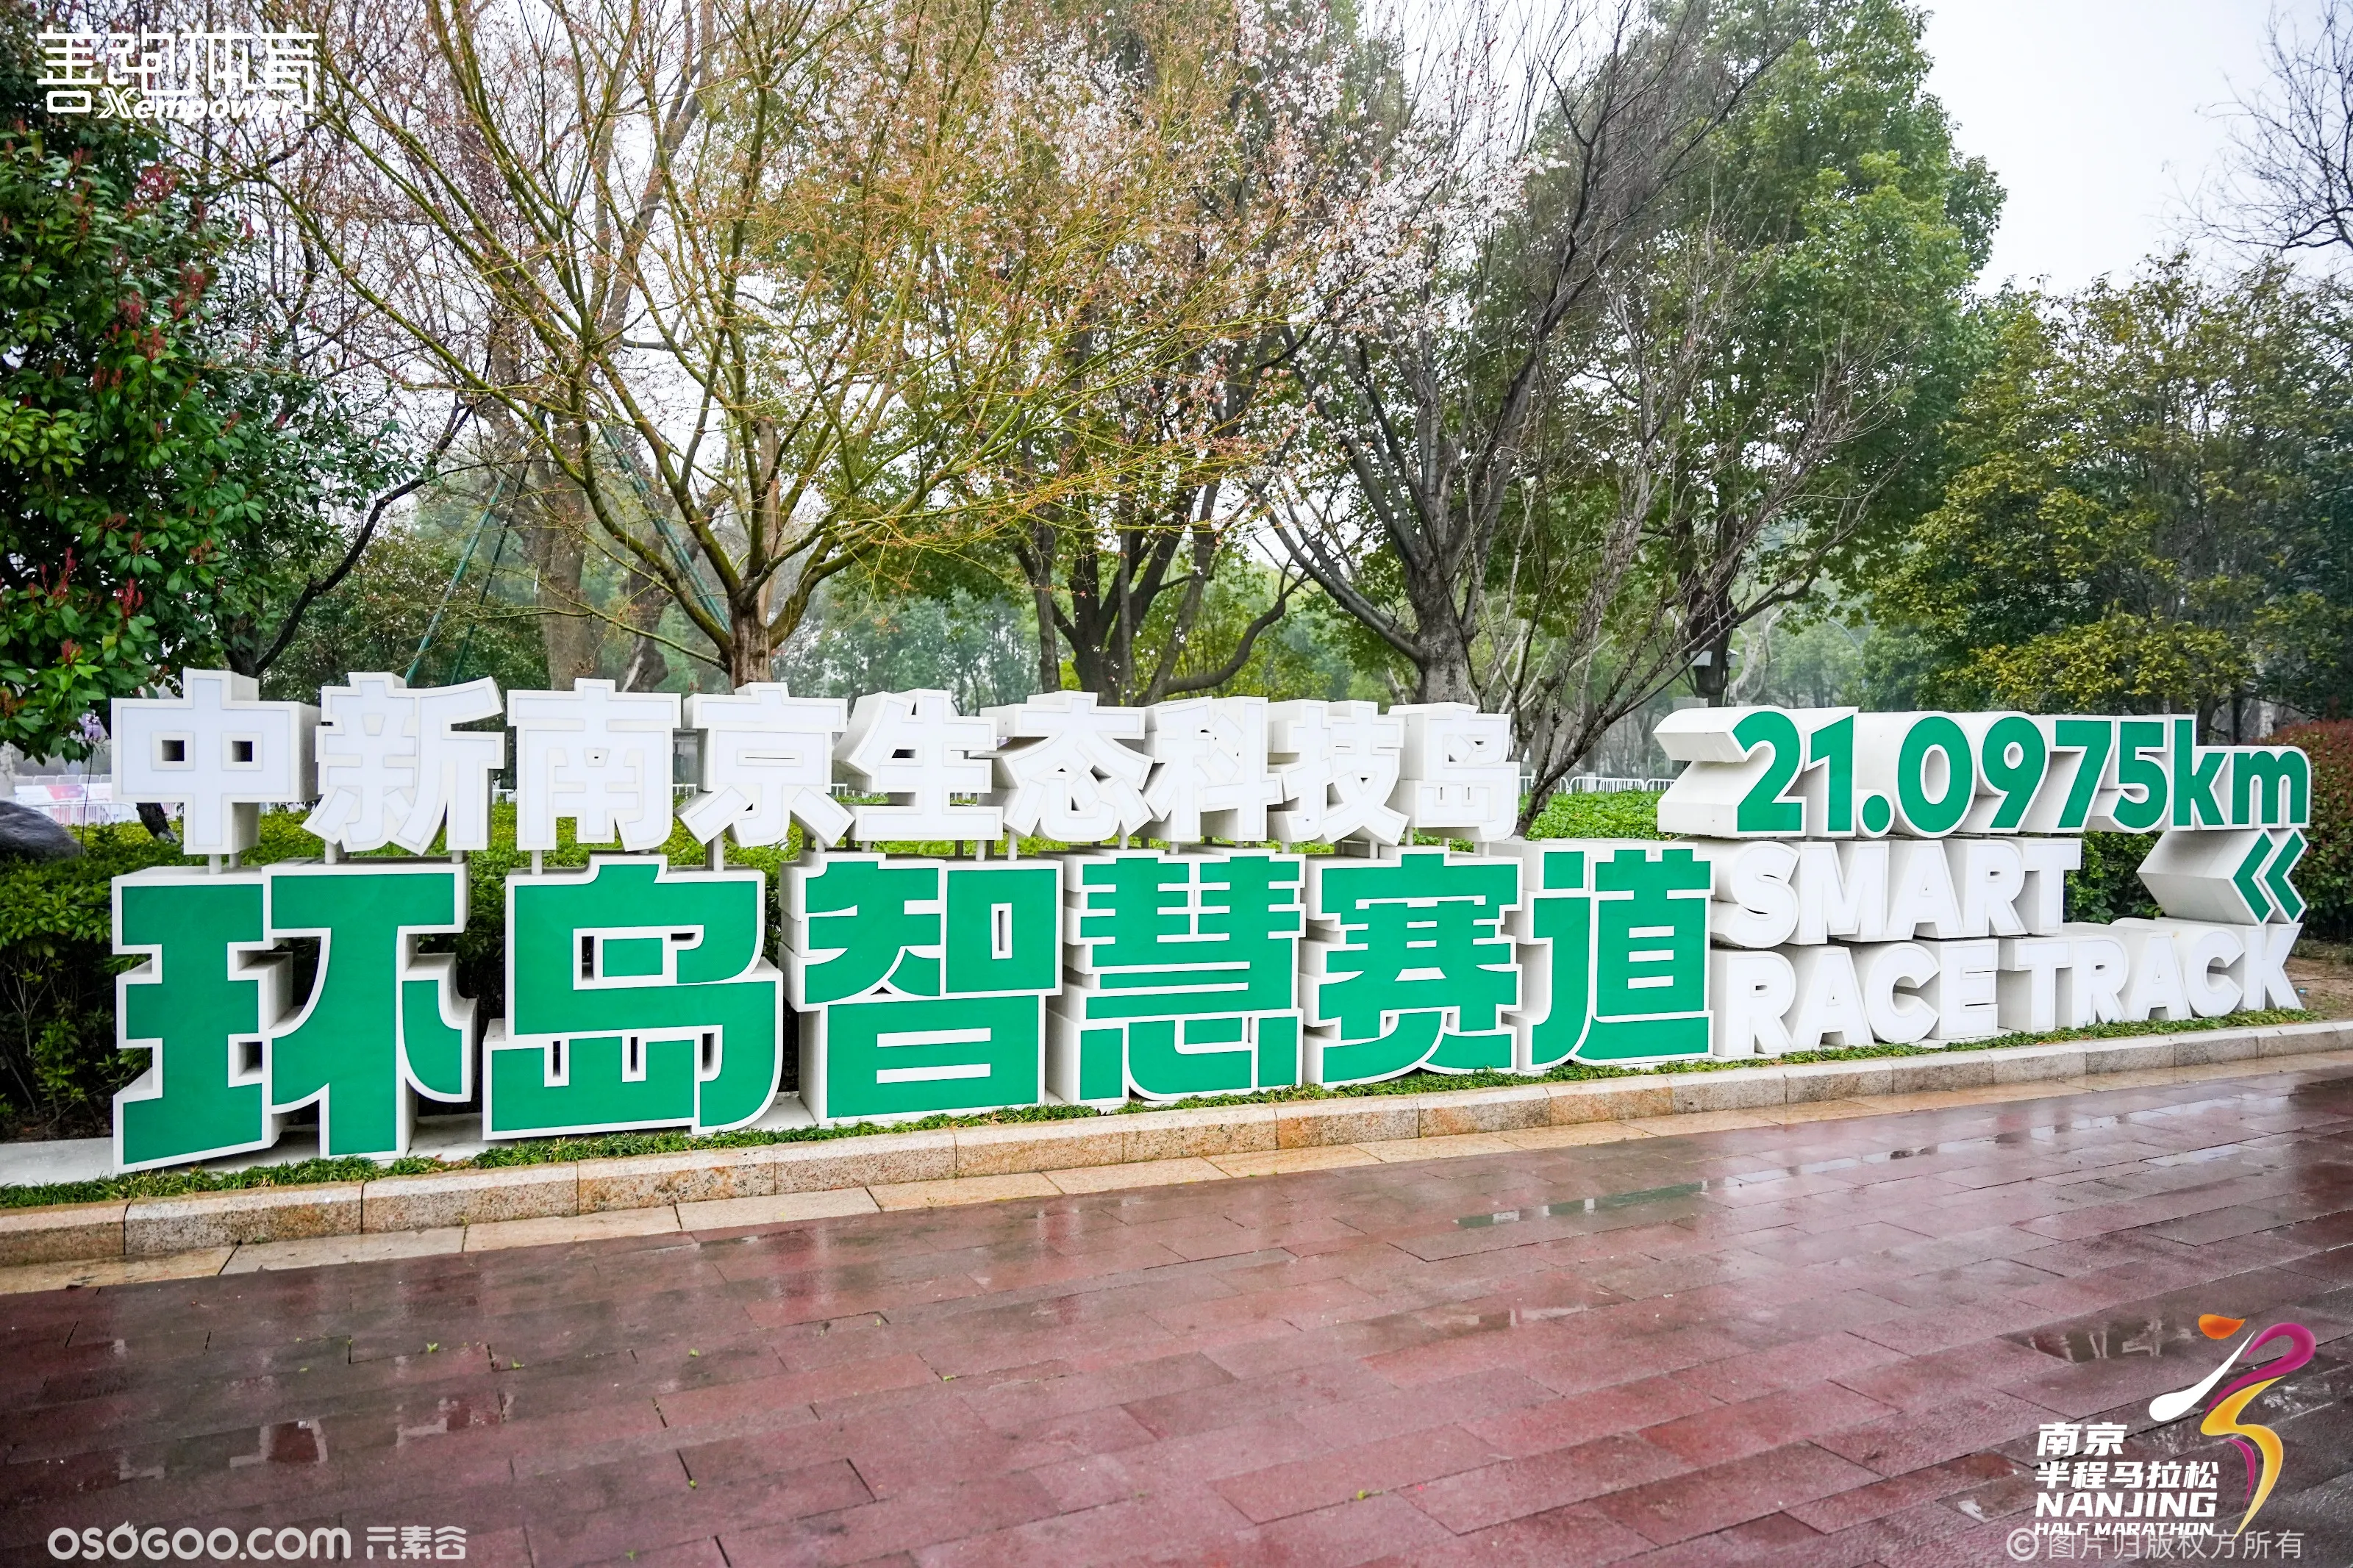 江苏银行·2024南京半程马拉松